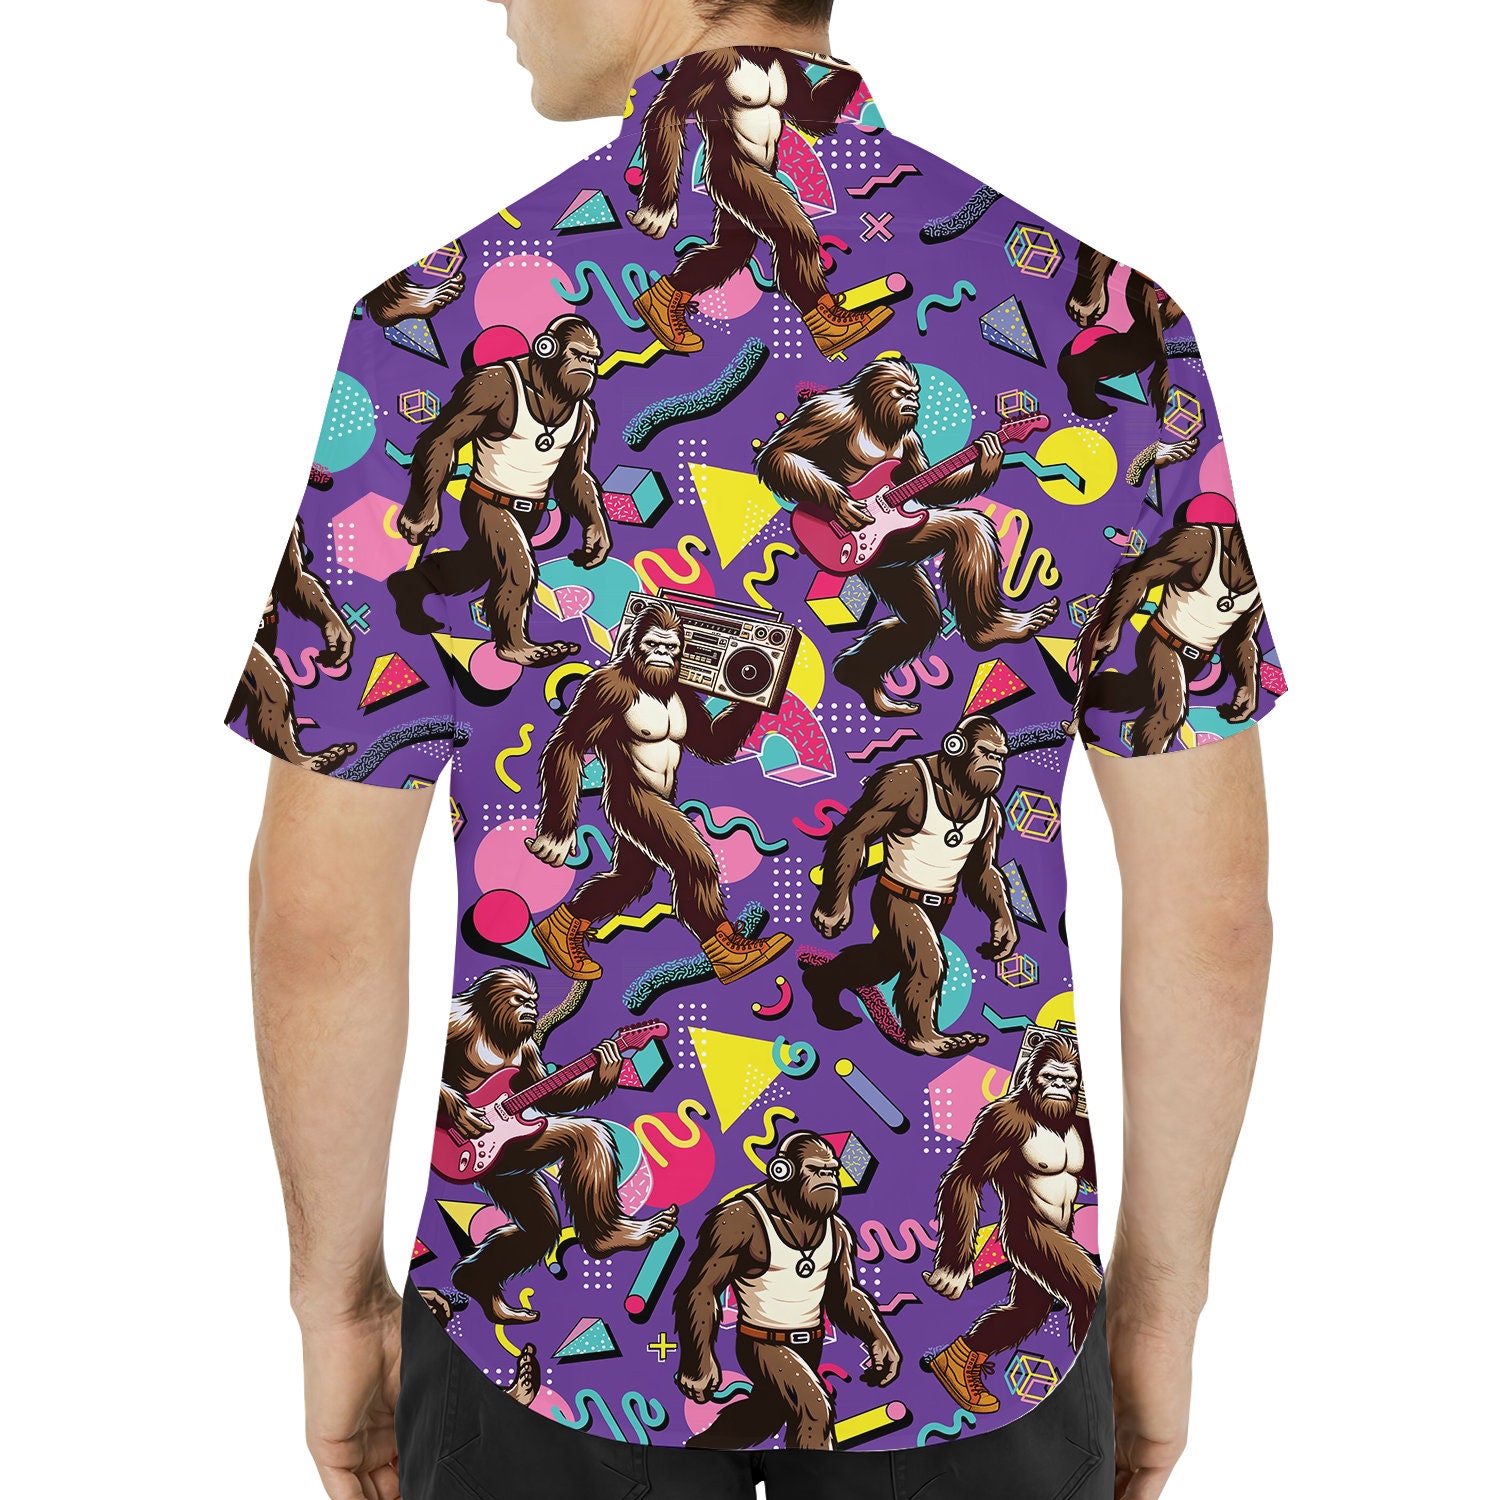 Retro Bigfoot Hawaiian Shirts for Men Women, Bigfoot Summer Beach Aloha Outfits